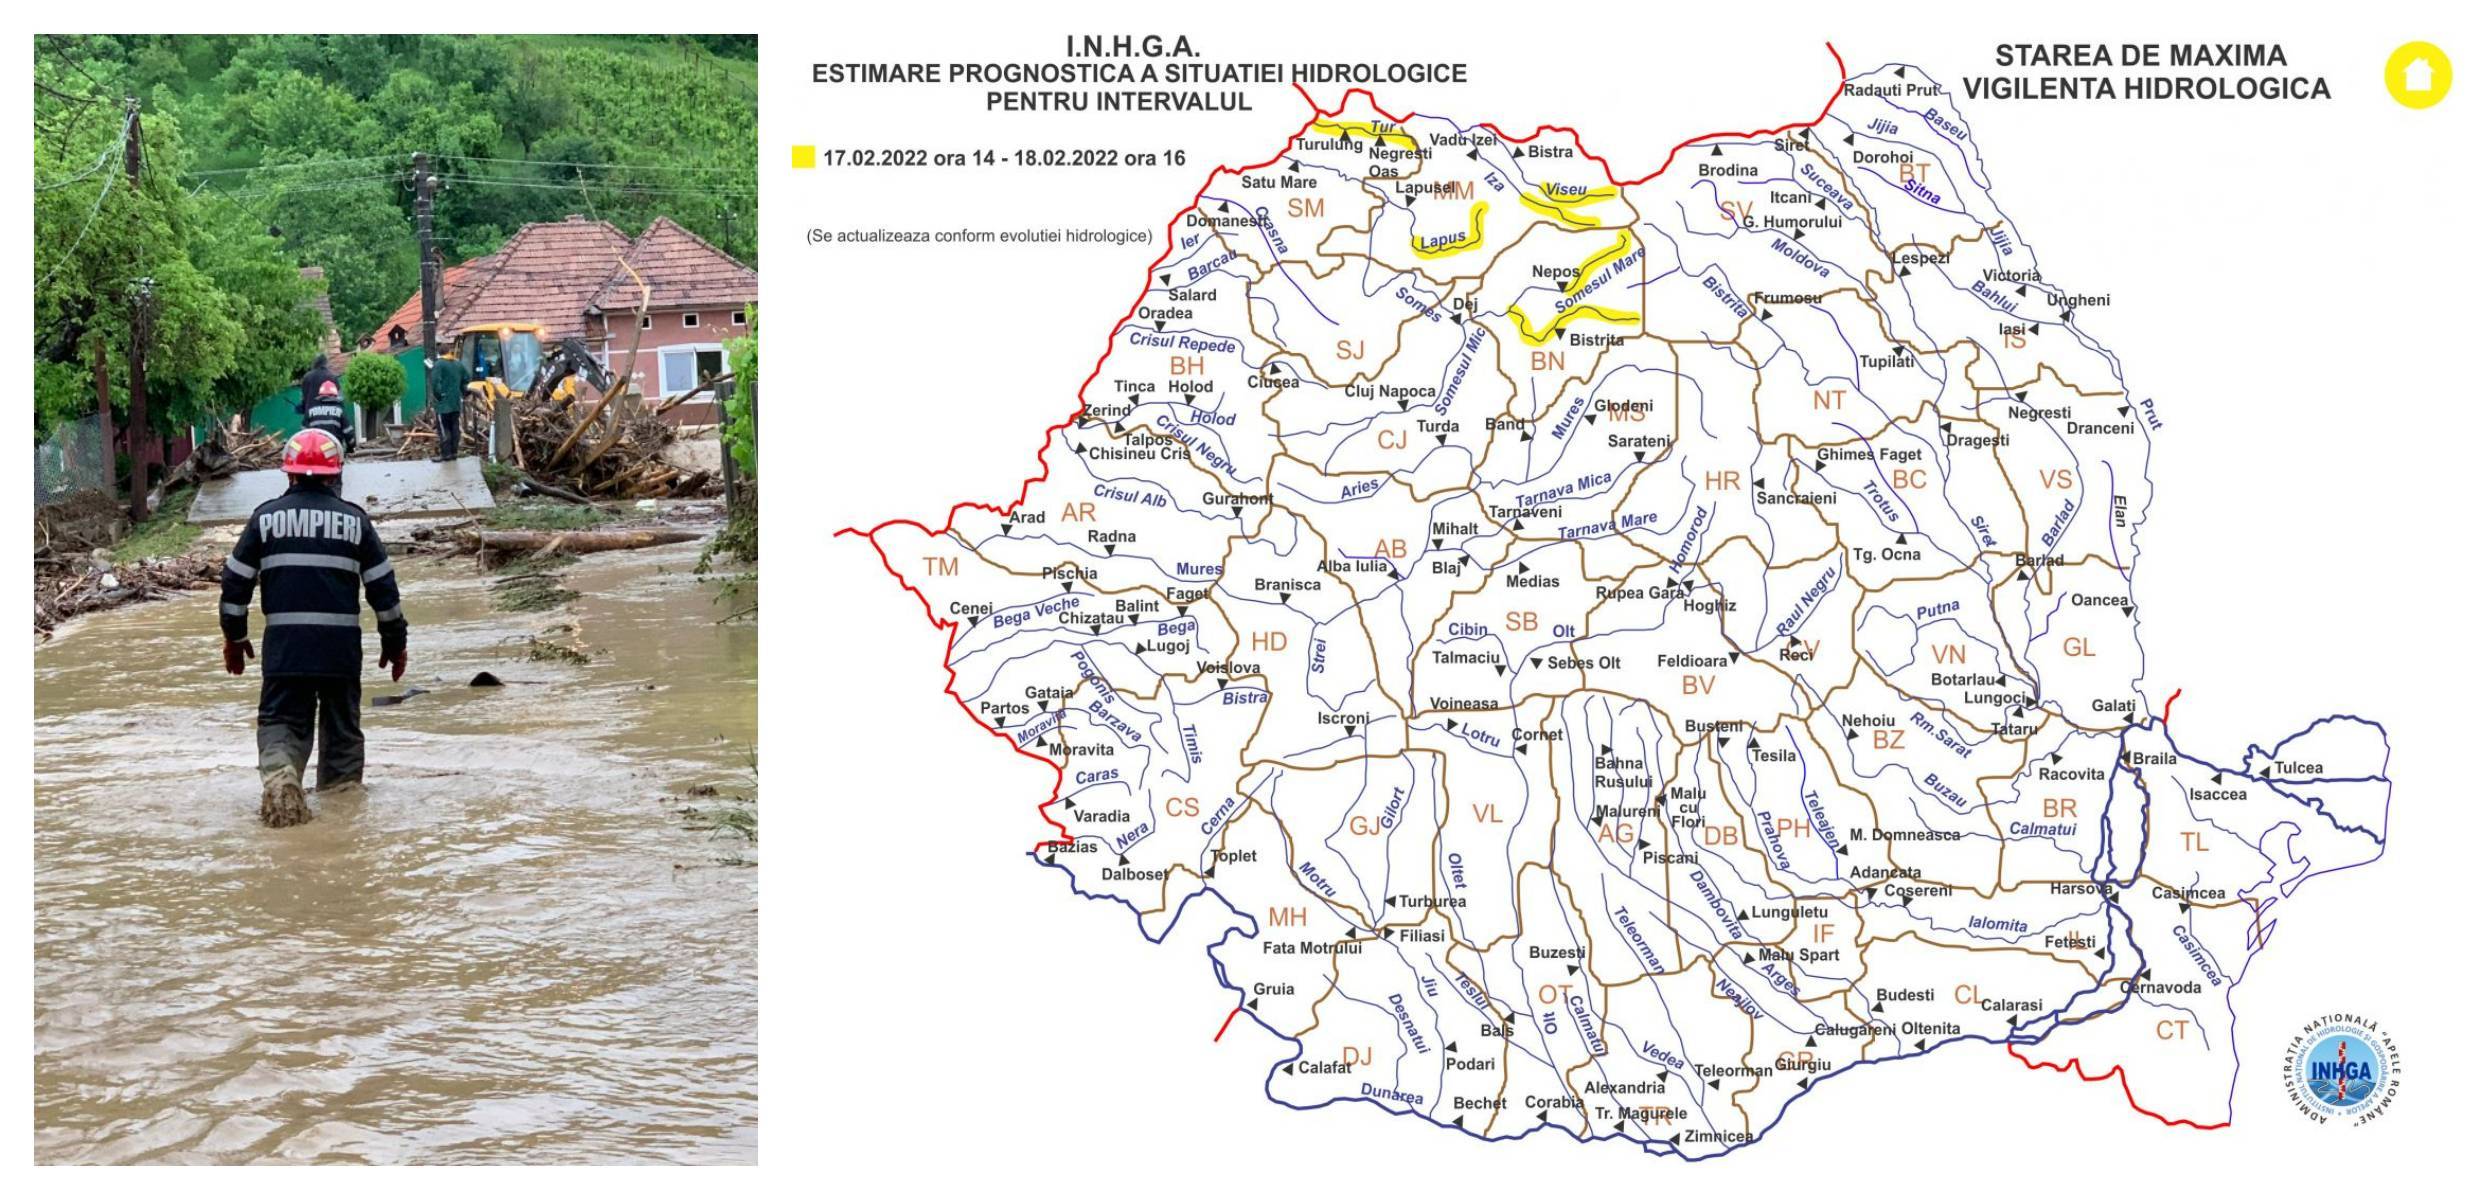 Avertizare INGHA. Cod galben de inundații în cinci bazine hidrografice din România